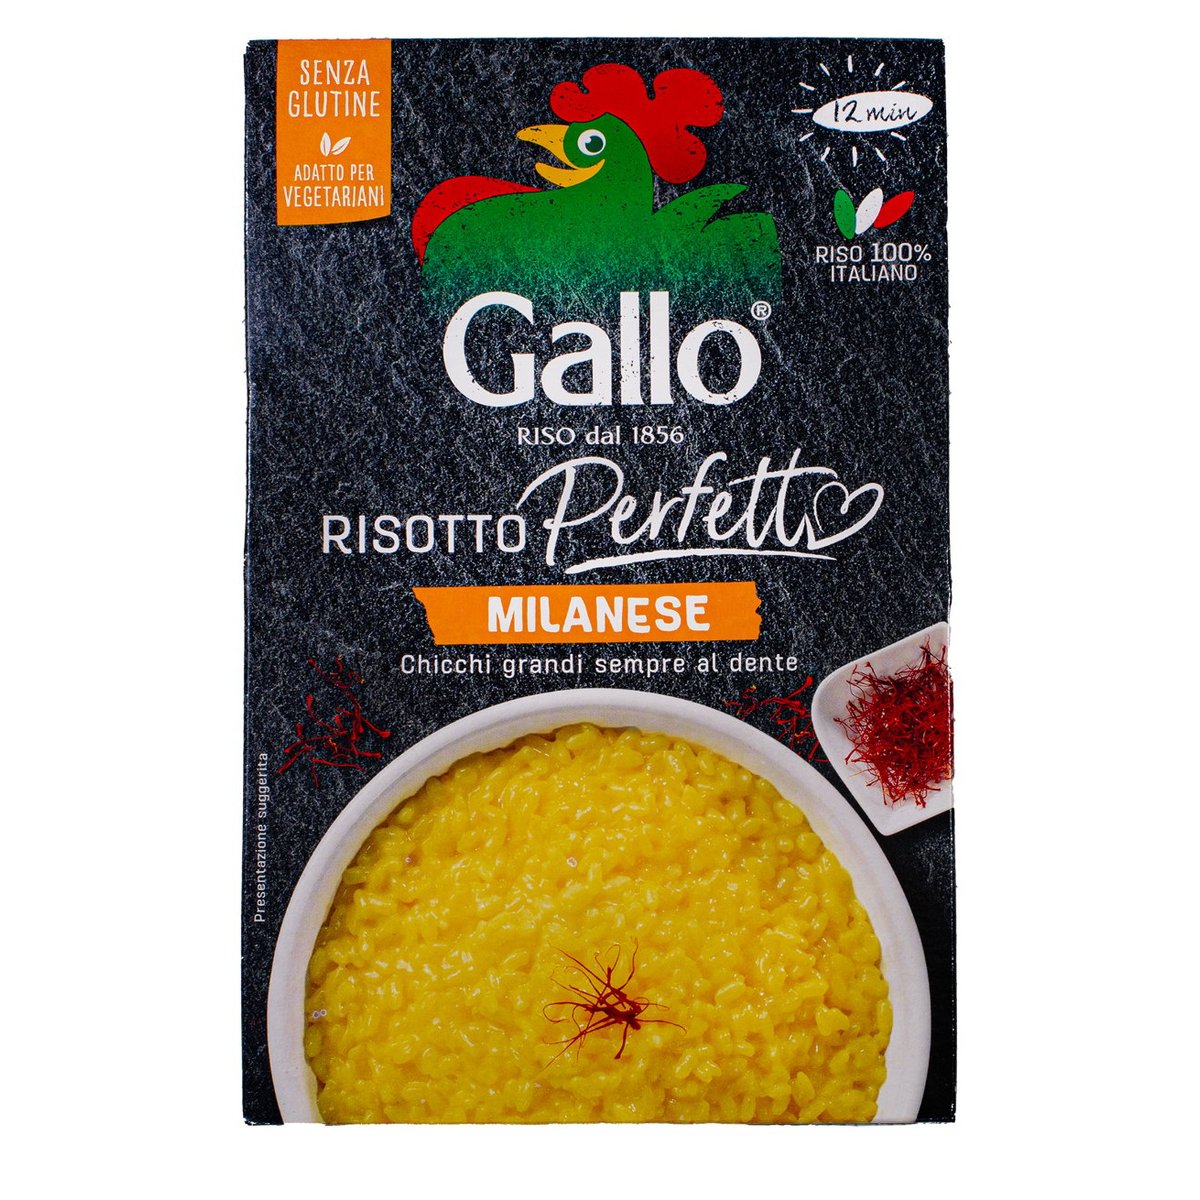 Gallo Risotto Perfetto Milanese